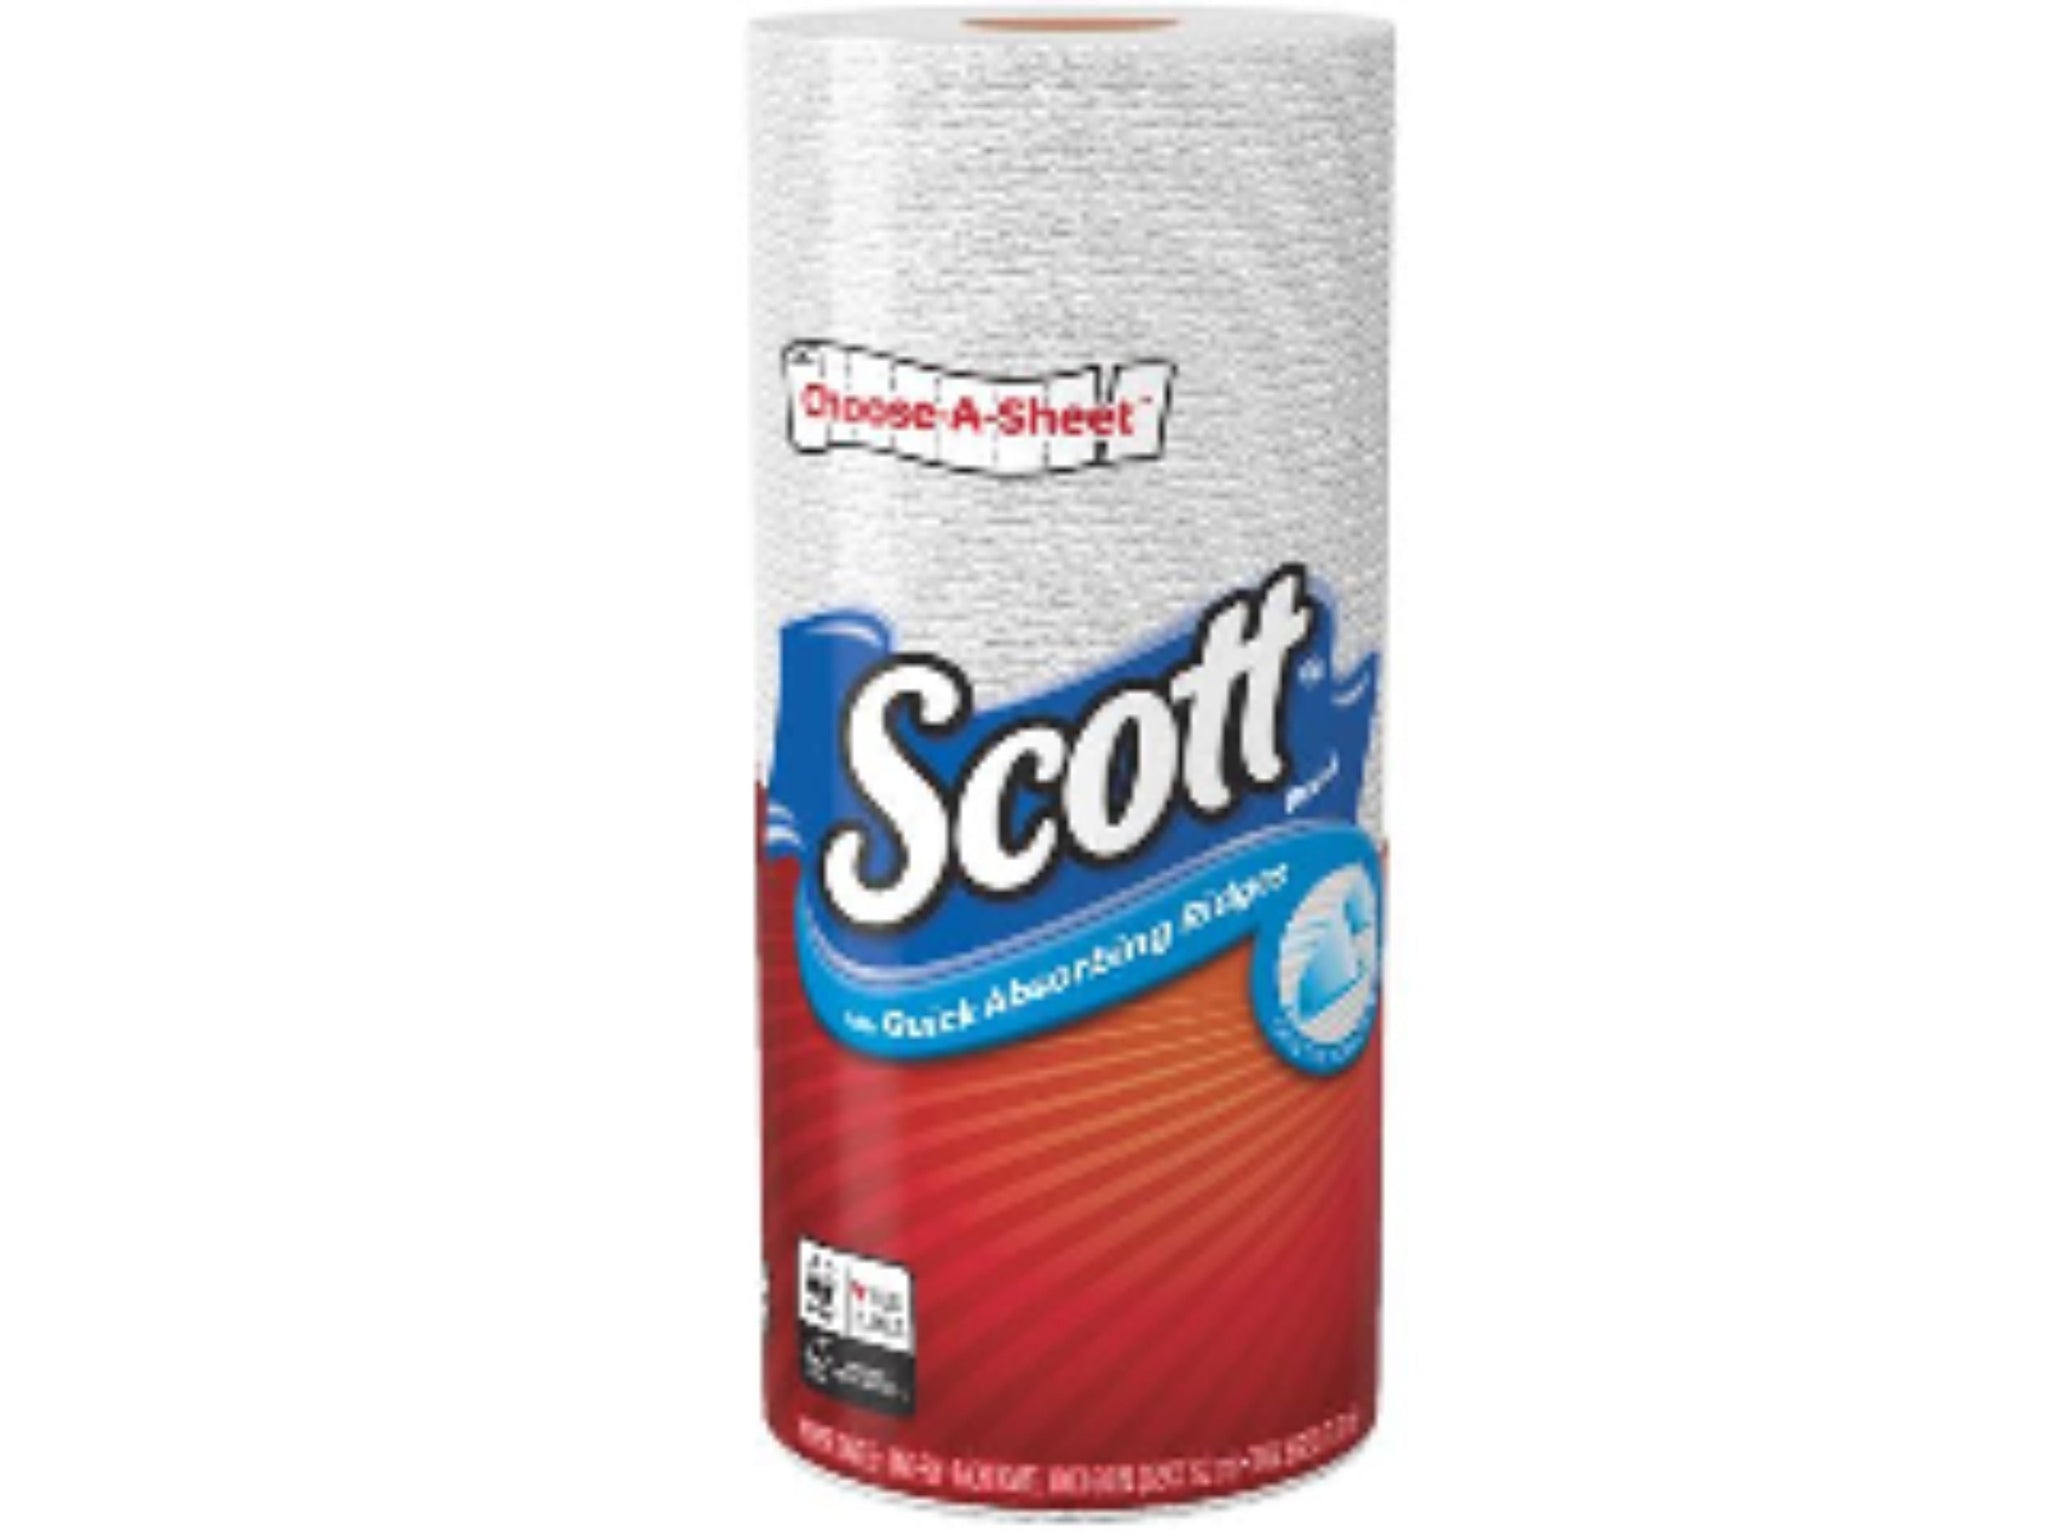 Scott Choose-A-Size Paper Towel, Single Roll